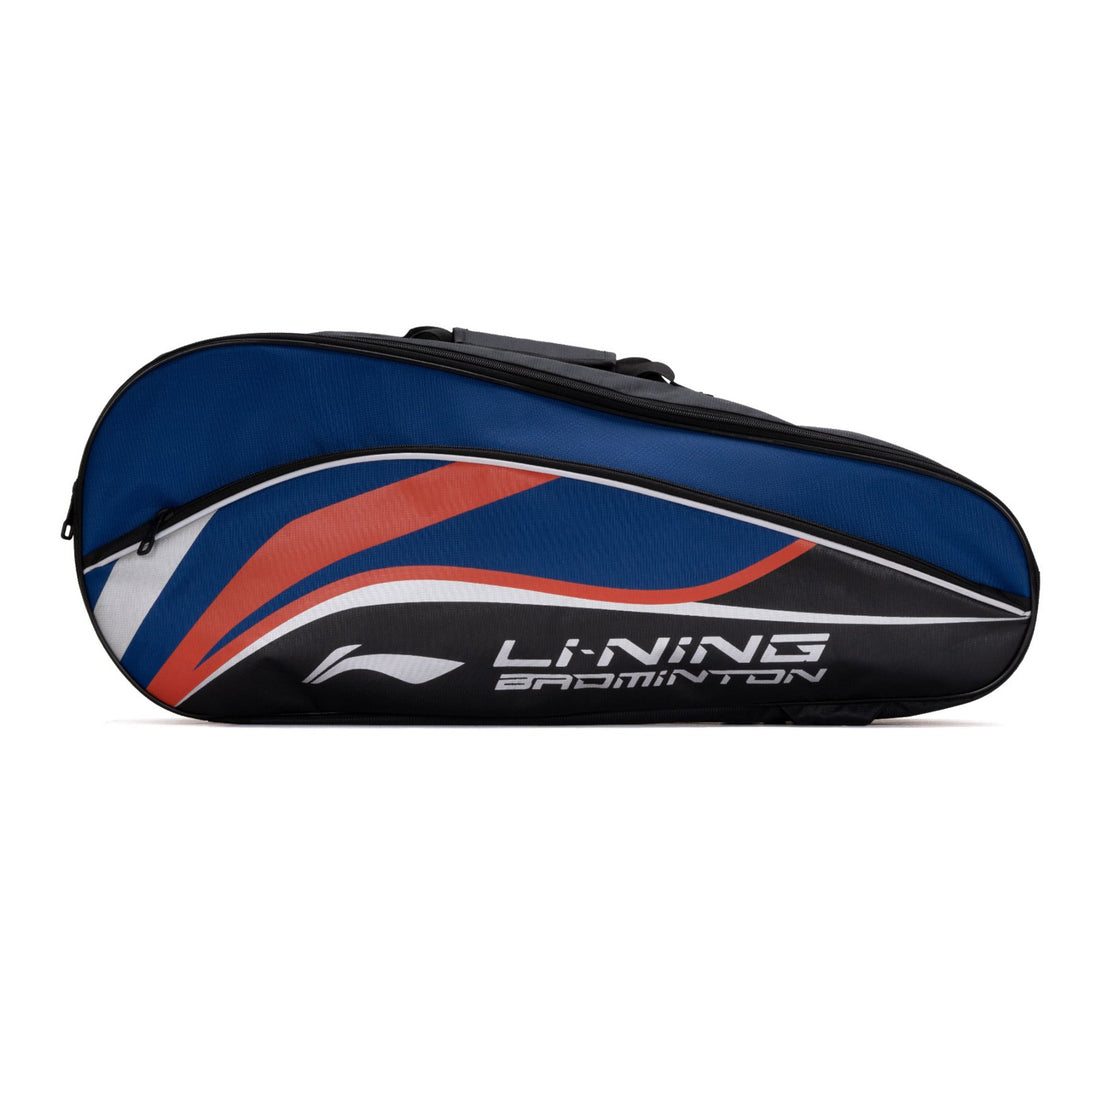 Li-Ning Panther Badminton Racquet Kitbag - Best Price online Prokicksports.com